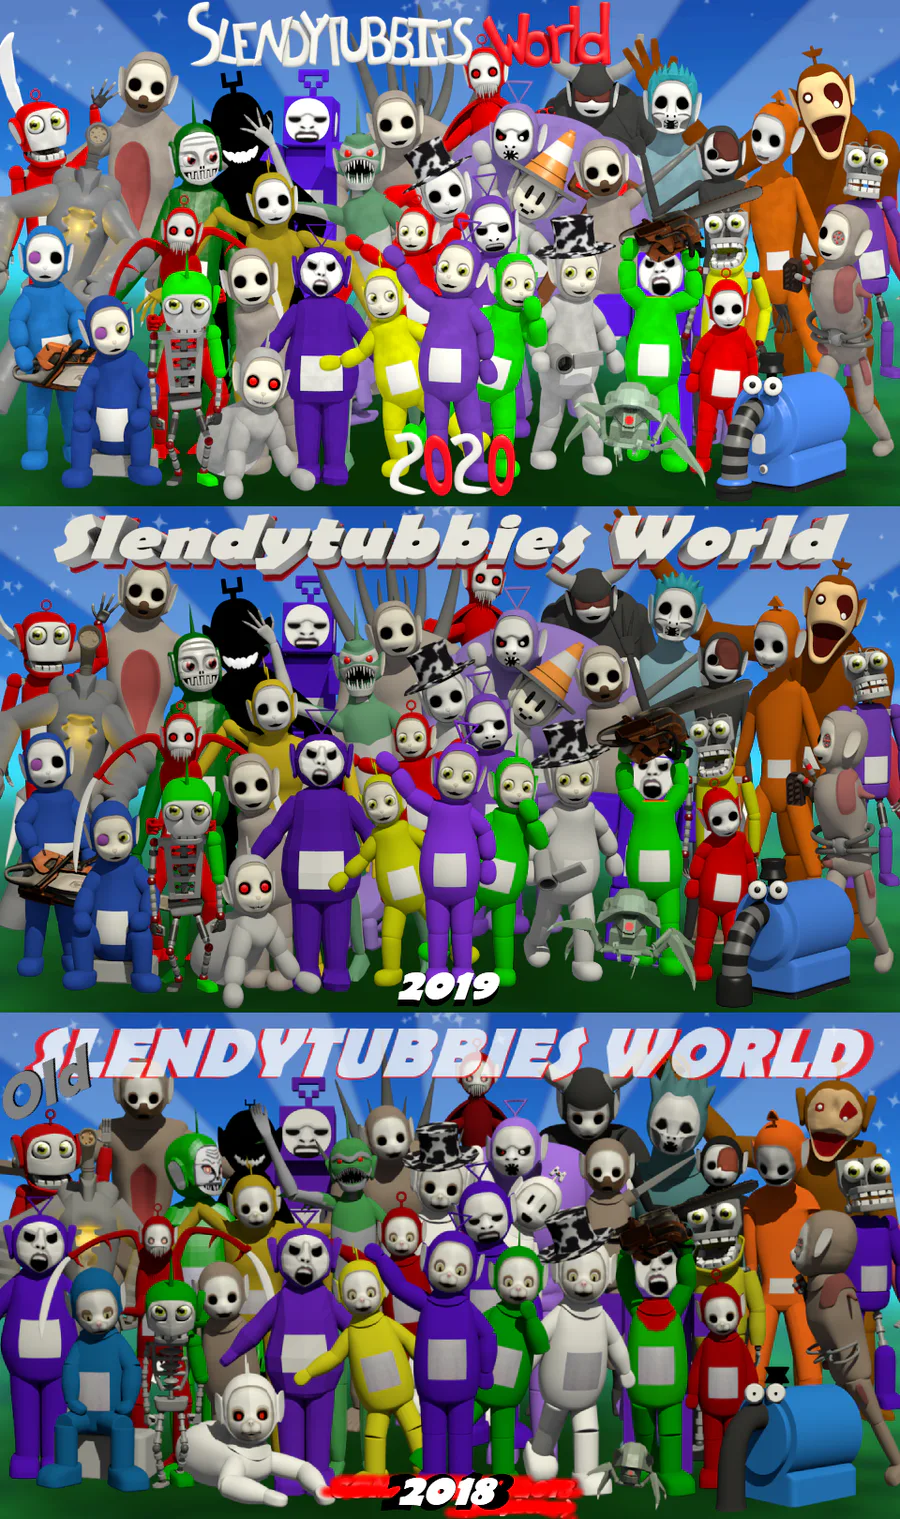 Slendytubies worlds [Archives] by Somegamejoltdude - Game Jolt